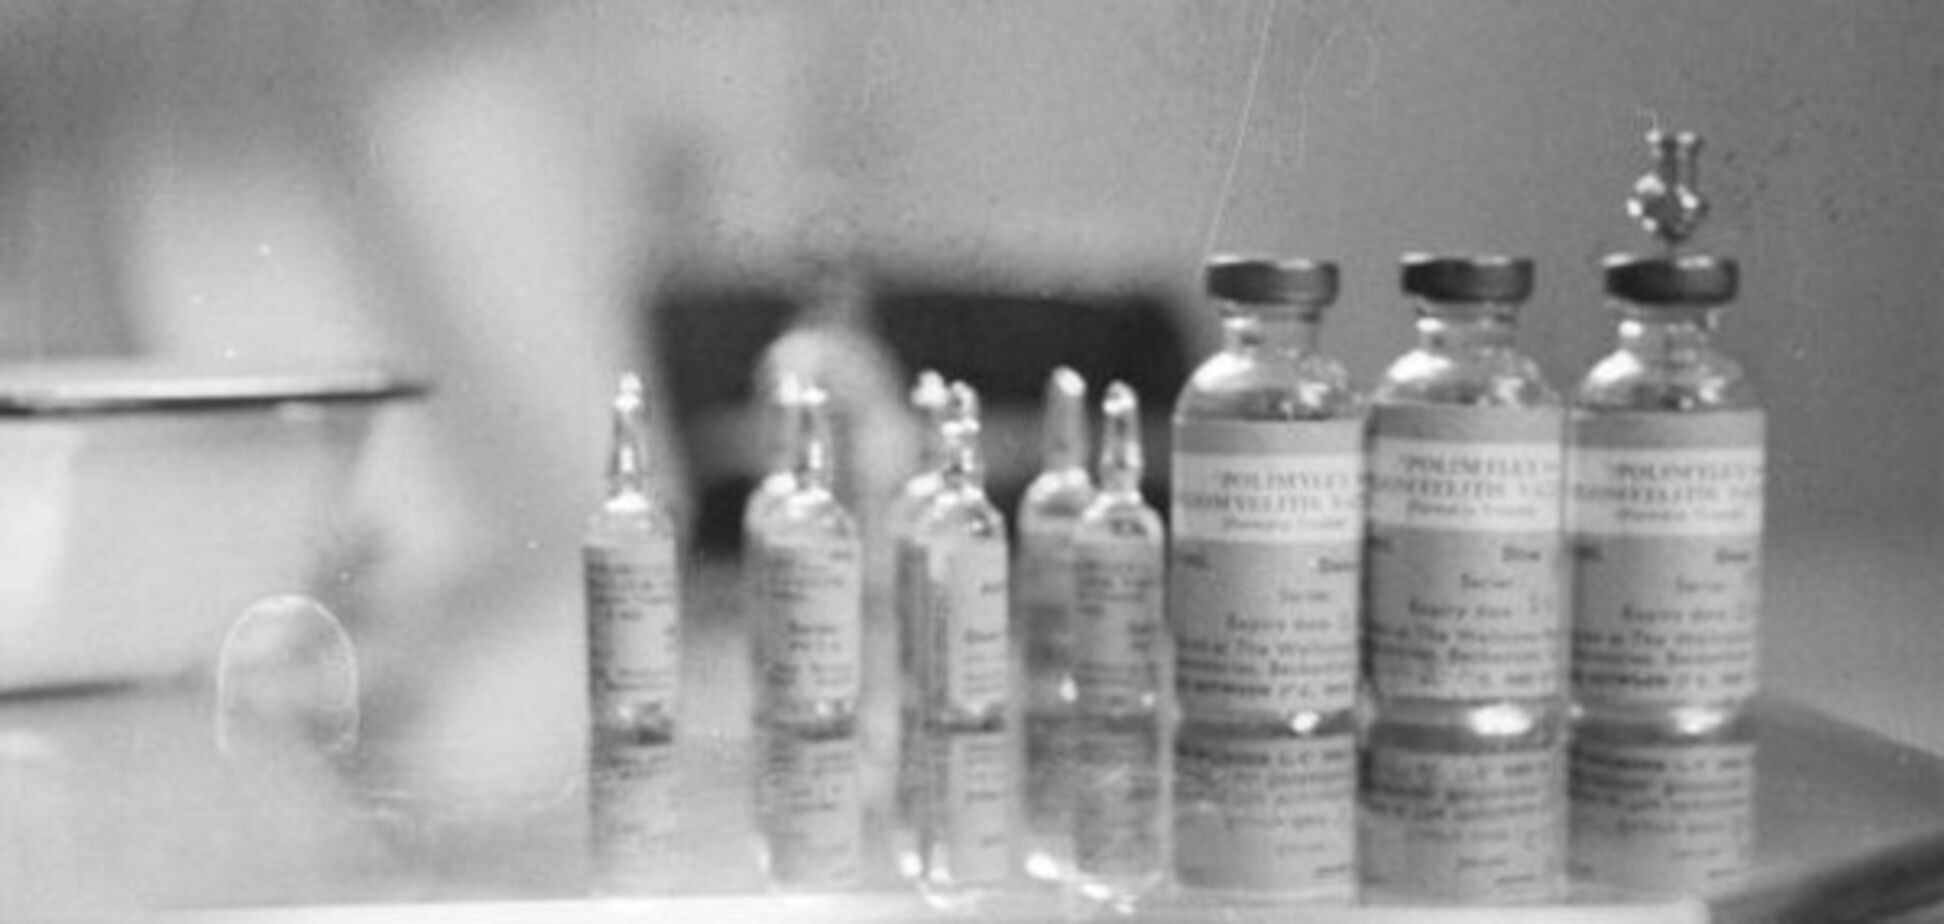 Вакцина от полиомиелита